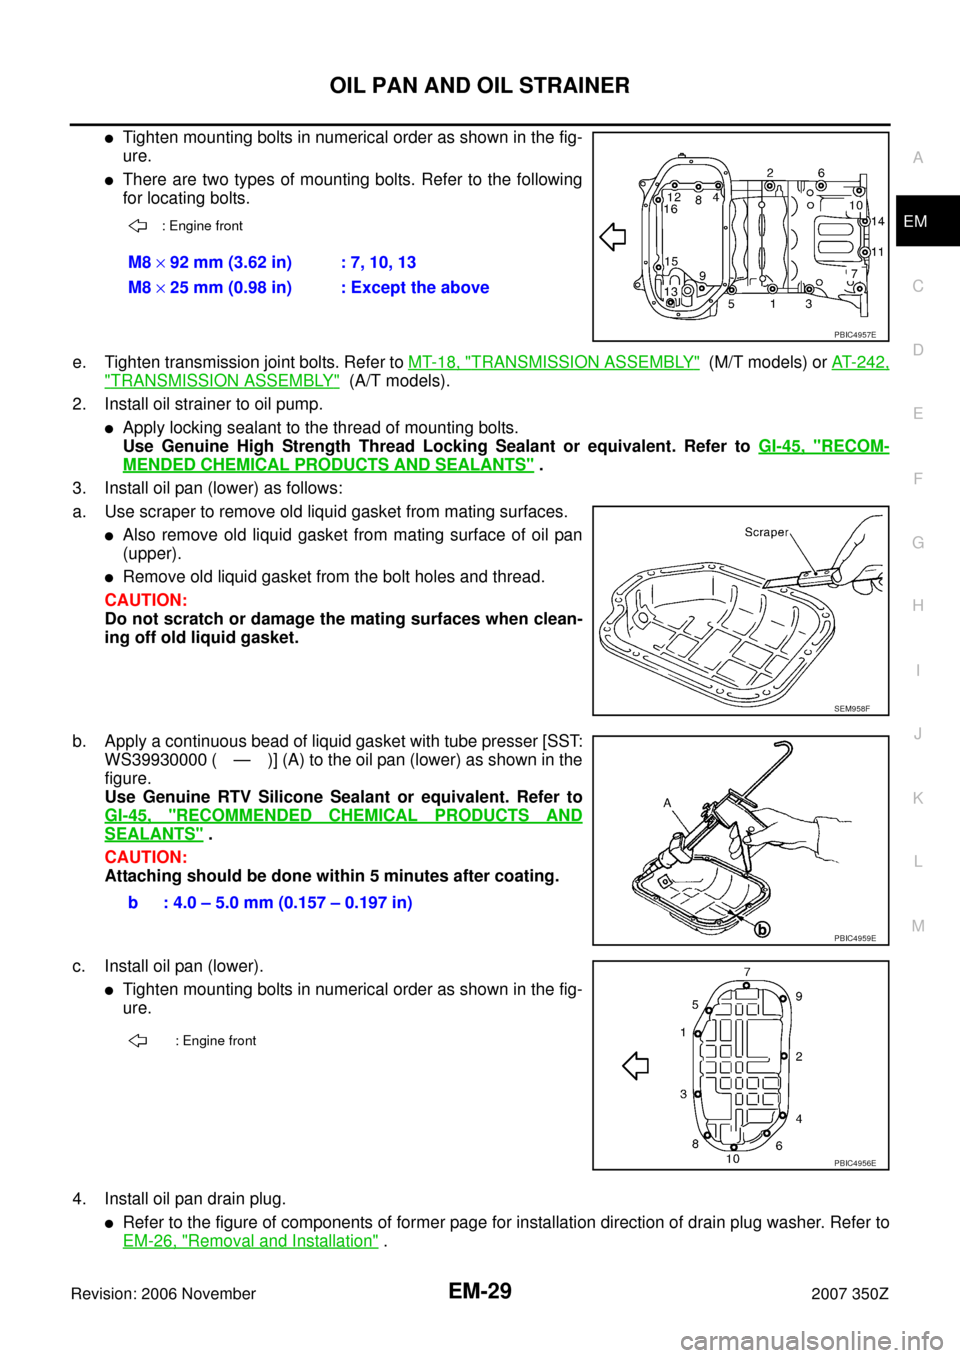 NISSAN 350Z 2007 Z33 Engine Mechanical Workshop Manual OIL PAN AND OIL STRAINER
EM-29
C
D
E
F
G
H
I
J
K
L
MA
EM
Revision: 2006 November2007 350Z
Tighten mounting bolts in numerical order as shown in the fig-
ure.
There are two types of mounting bolts. R